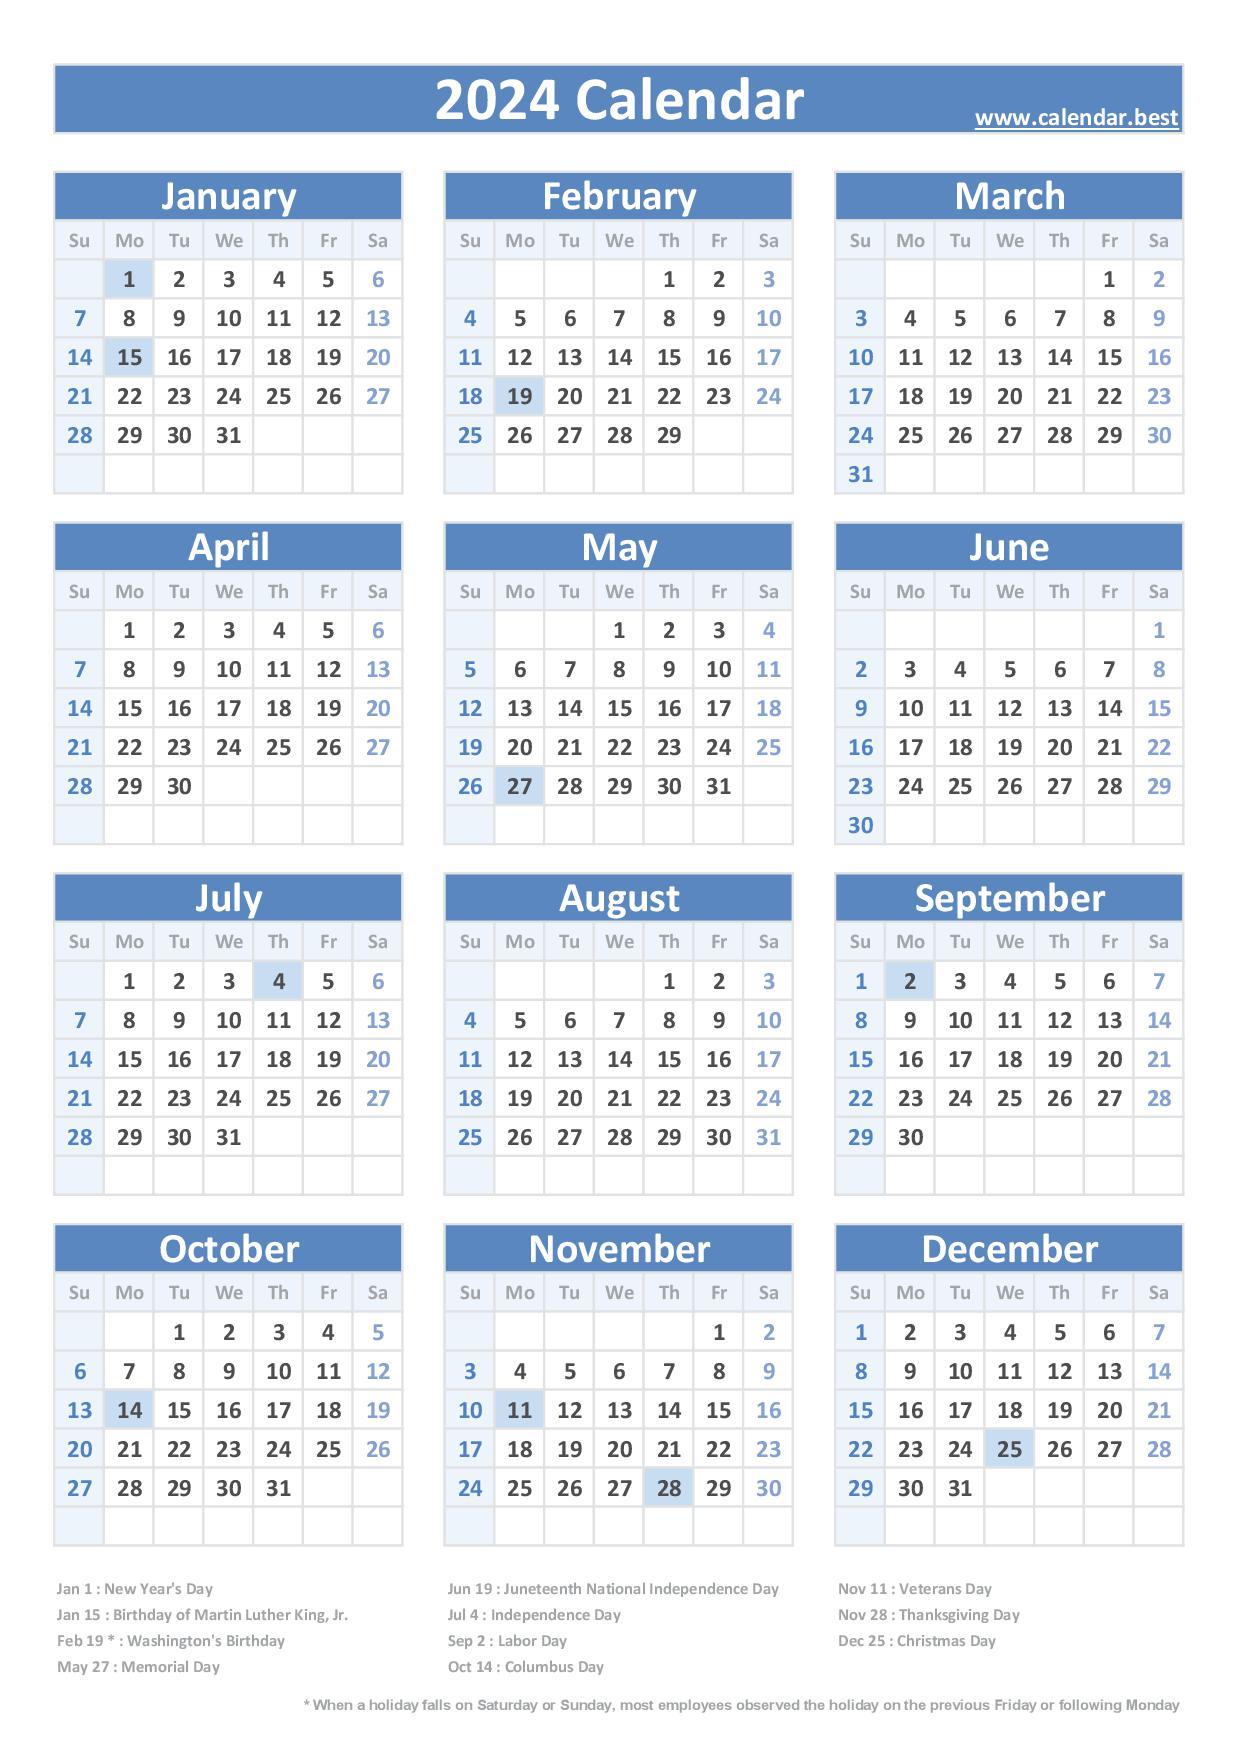 2024 Fedeeral Calendar Cyndi Dorelle